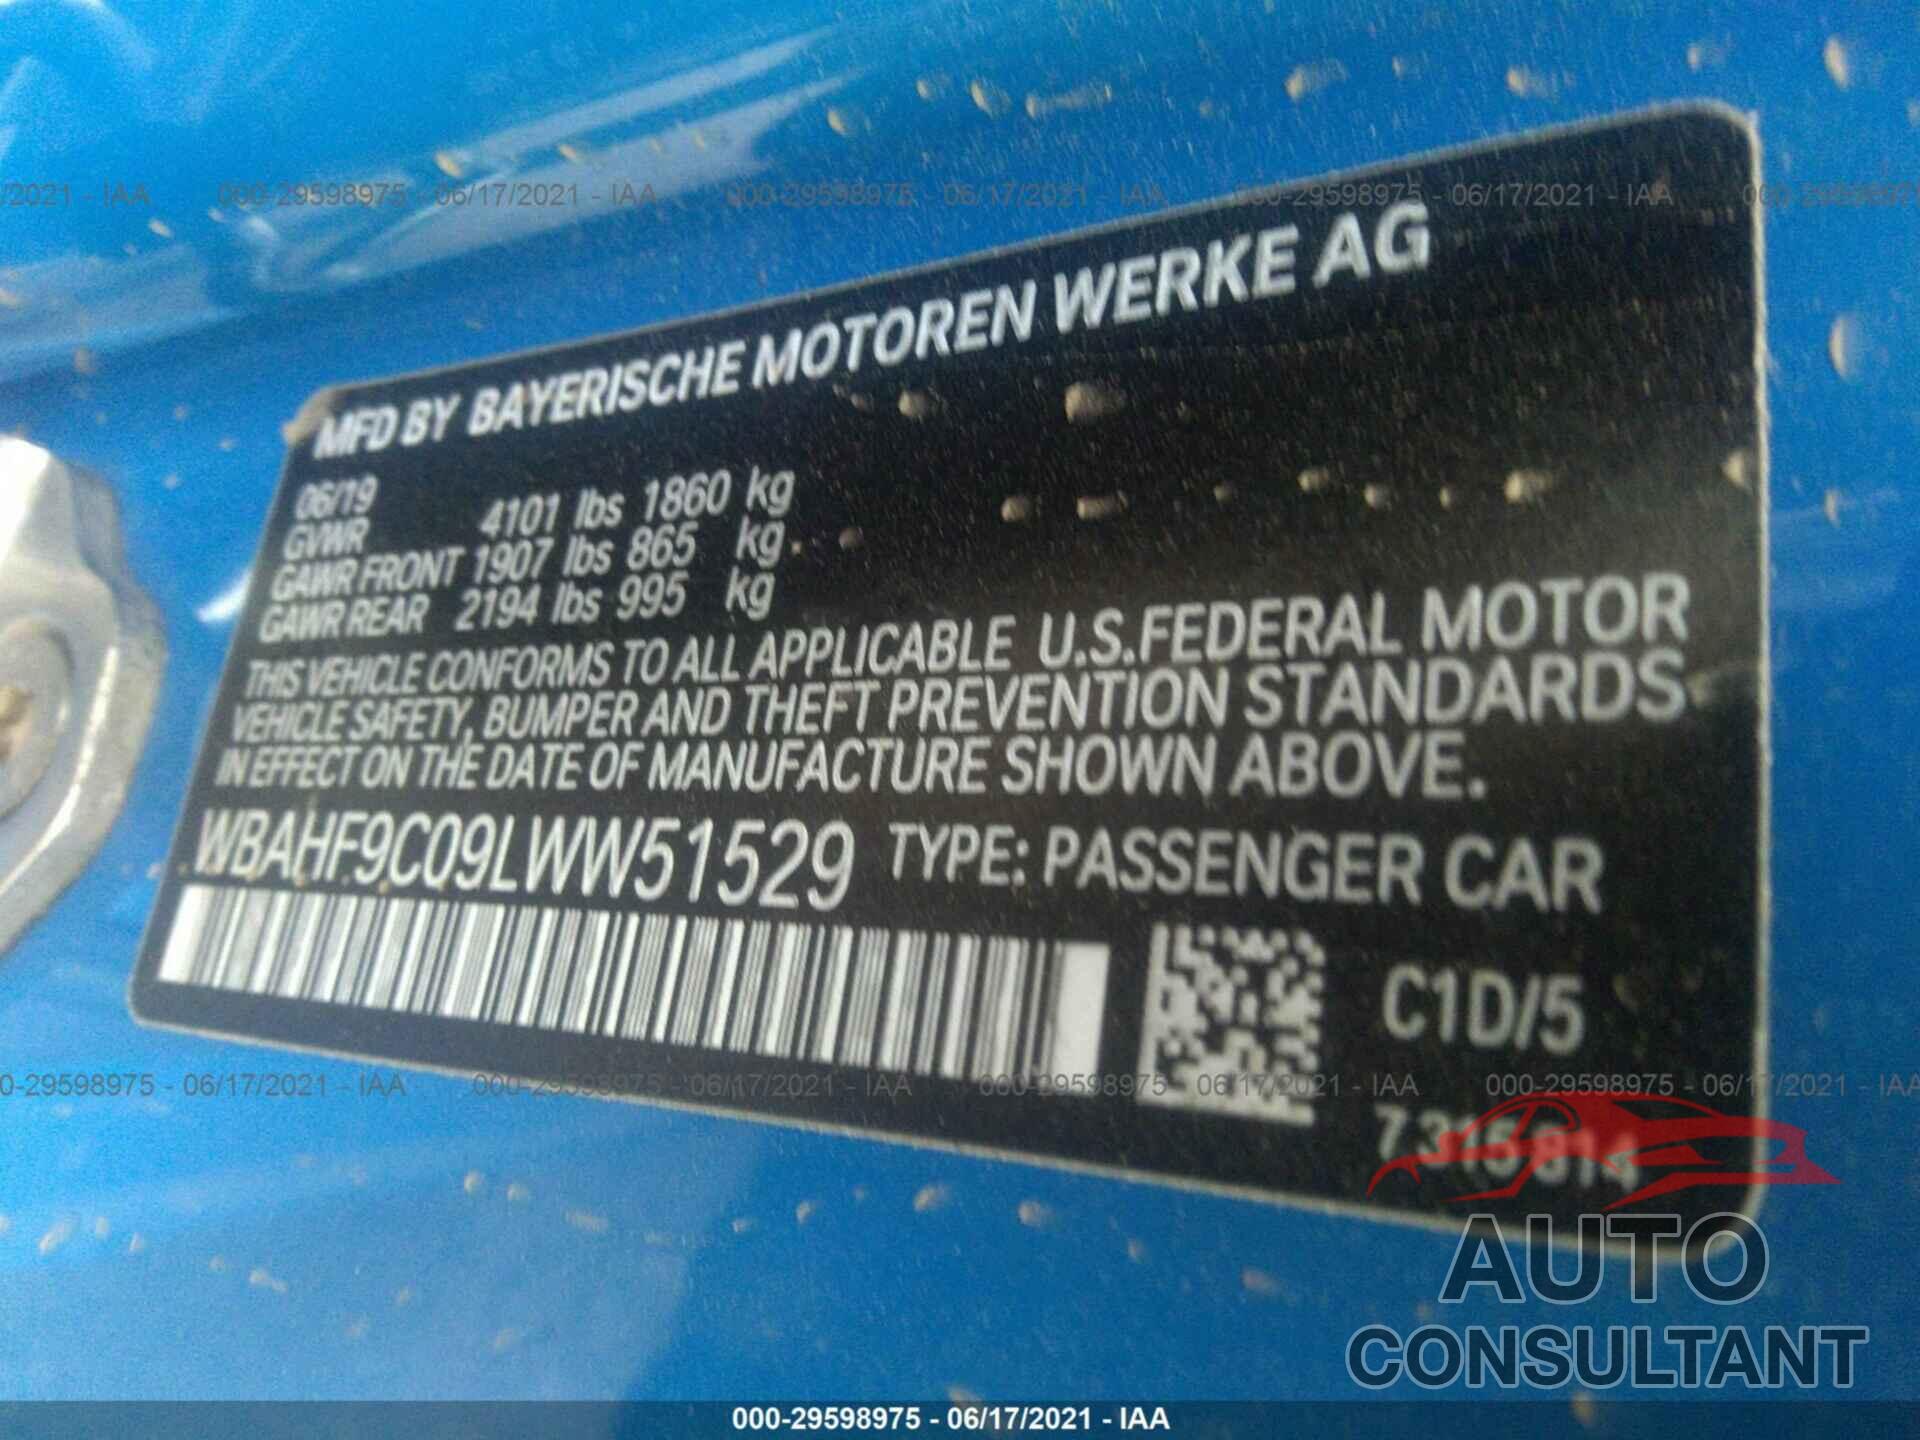 BMW Z4 2020 - WBAHF9C09LWW51529